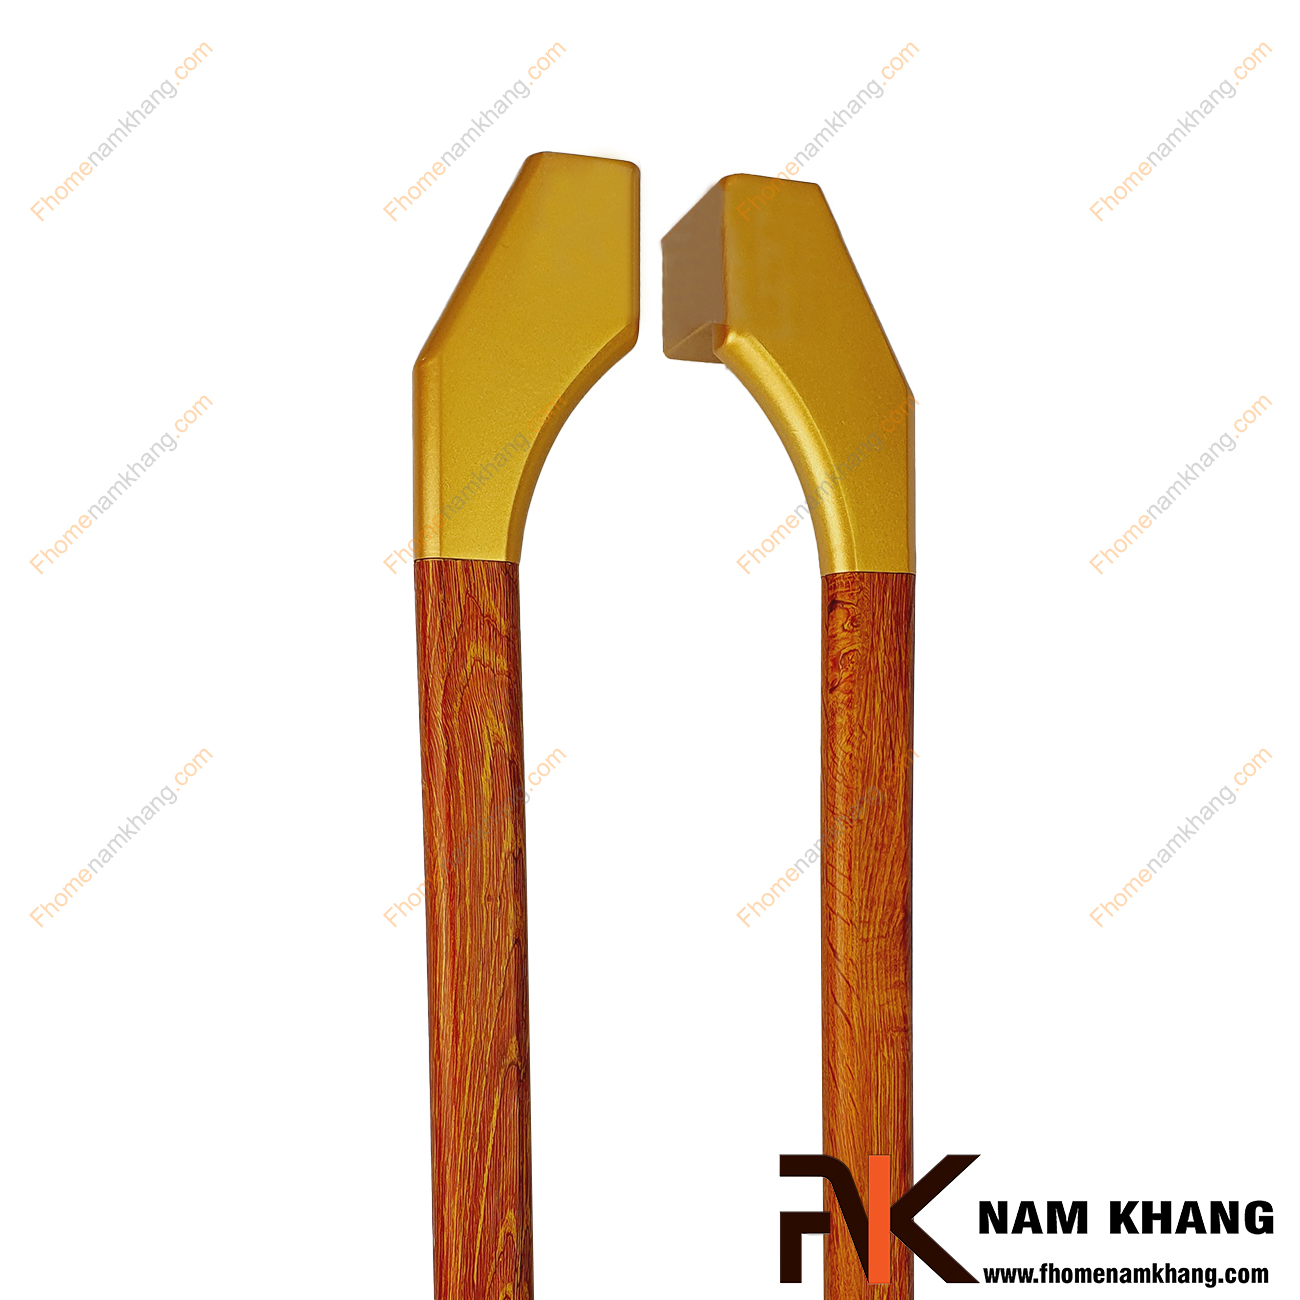 Tay nắm cửa chính bằng inox màu vàng mờ phối gỗ đỏ NKC023L-GD đa dạng trong phong cách phối hợp, có thể sử dụng trên cửa mở 1 cánh, cửa mở 2 cánh hoặc cửa lùa 1 cánh, 2 cánh.